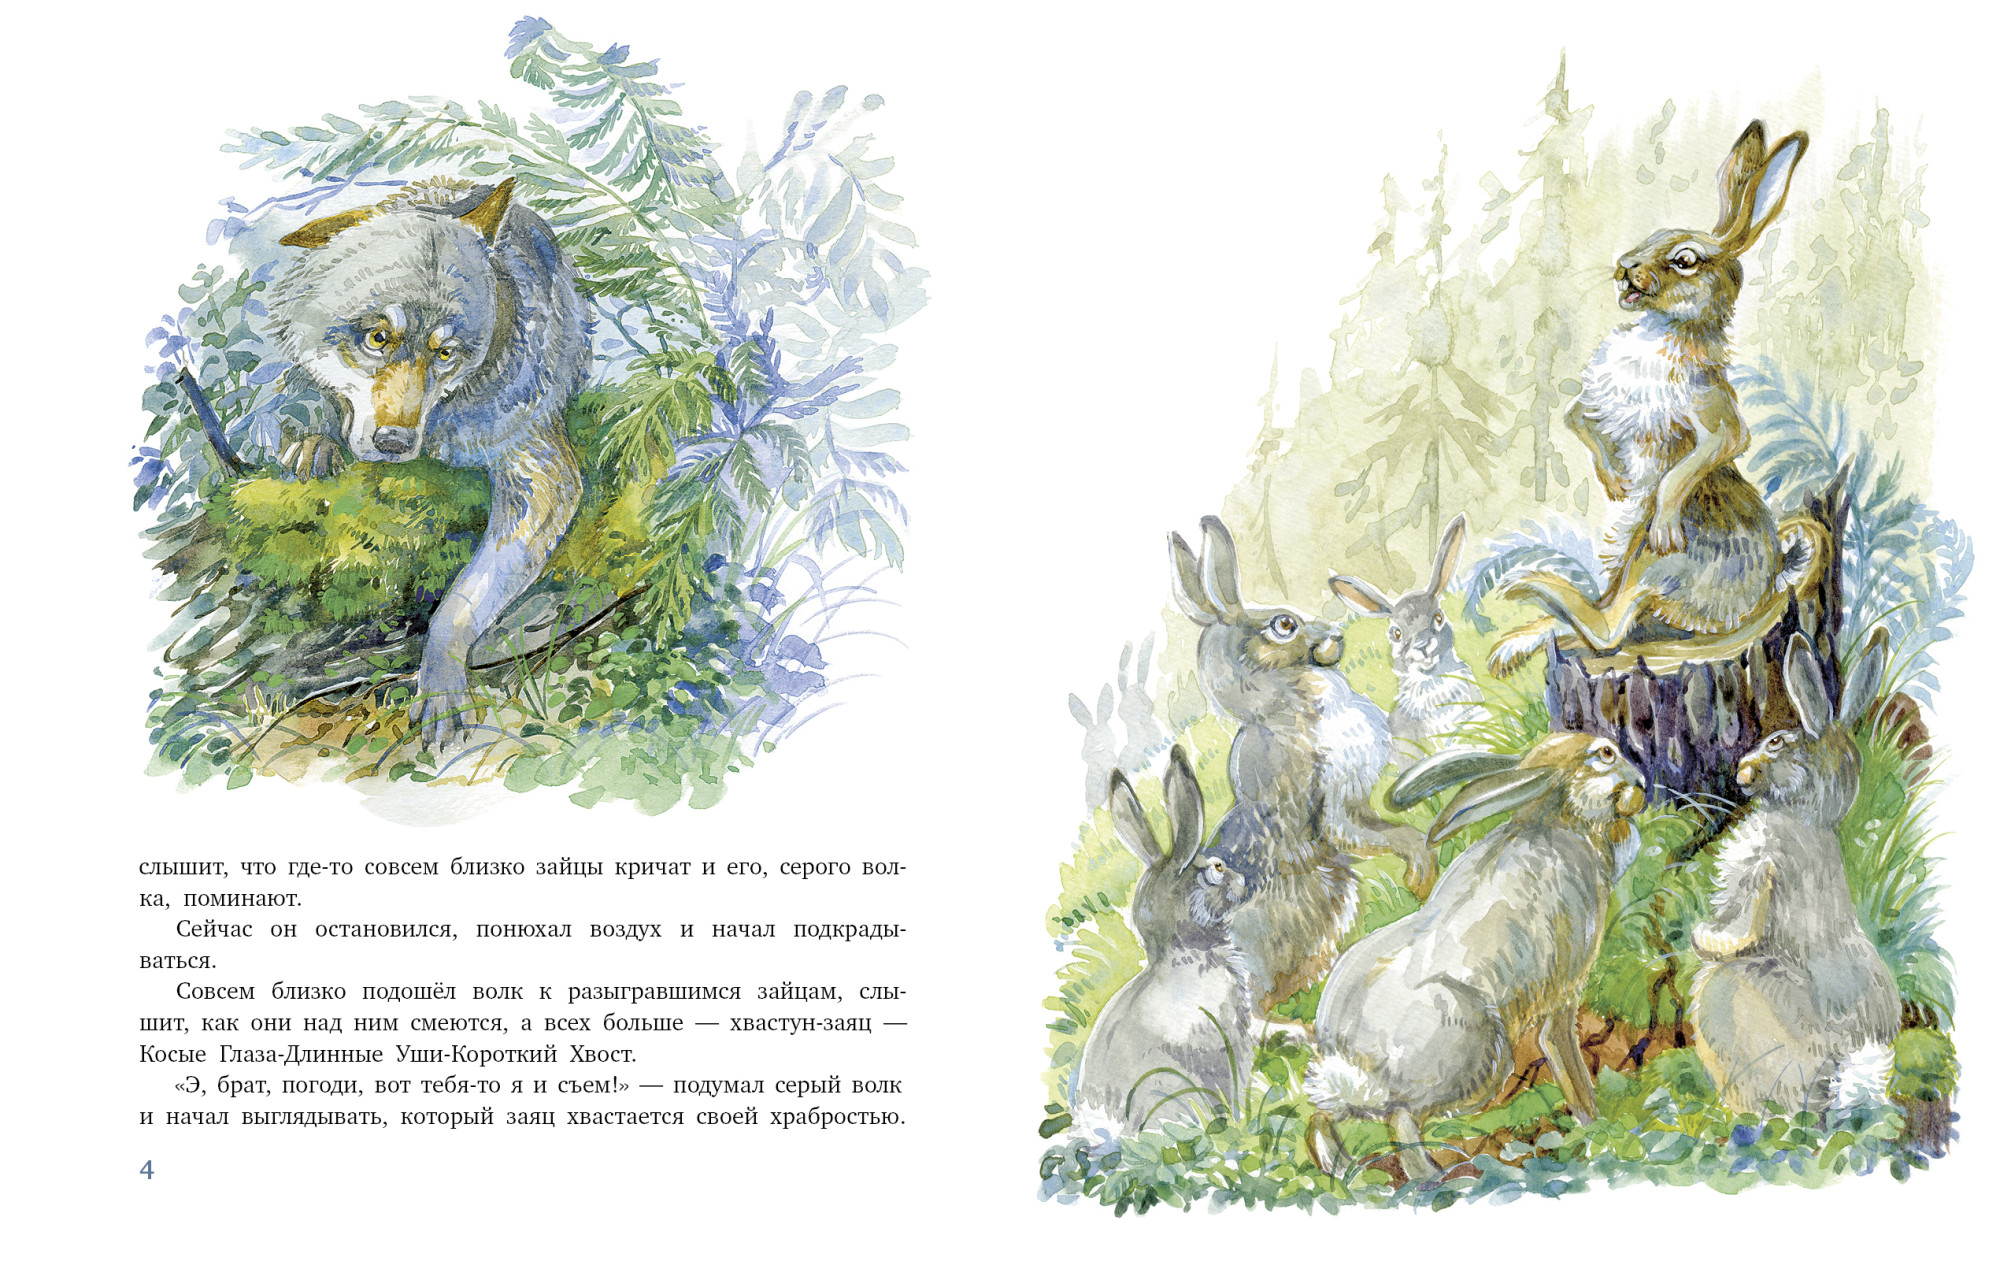 Сказка про храброго зайца – длинные уши, косые глаза, короткий хвост. универсальная хрестоматия. 2 класс